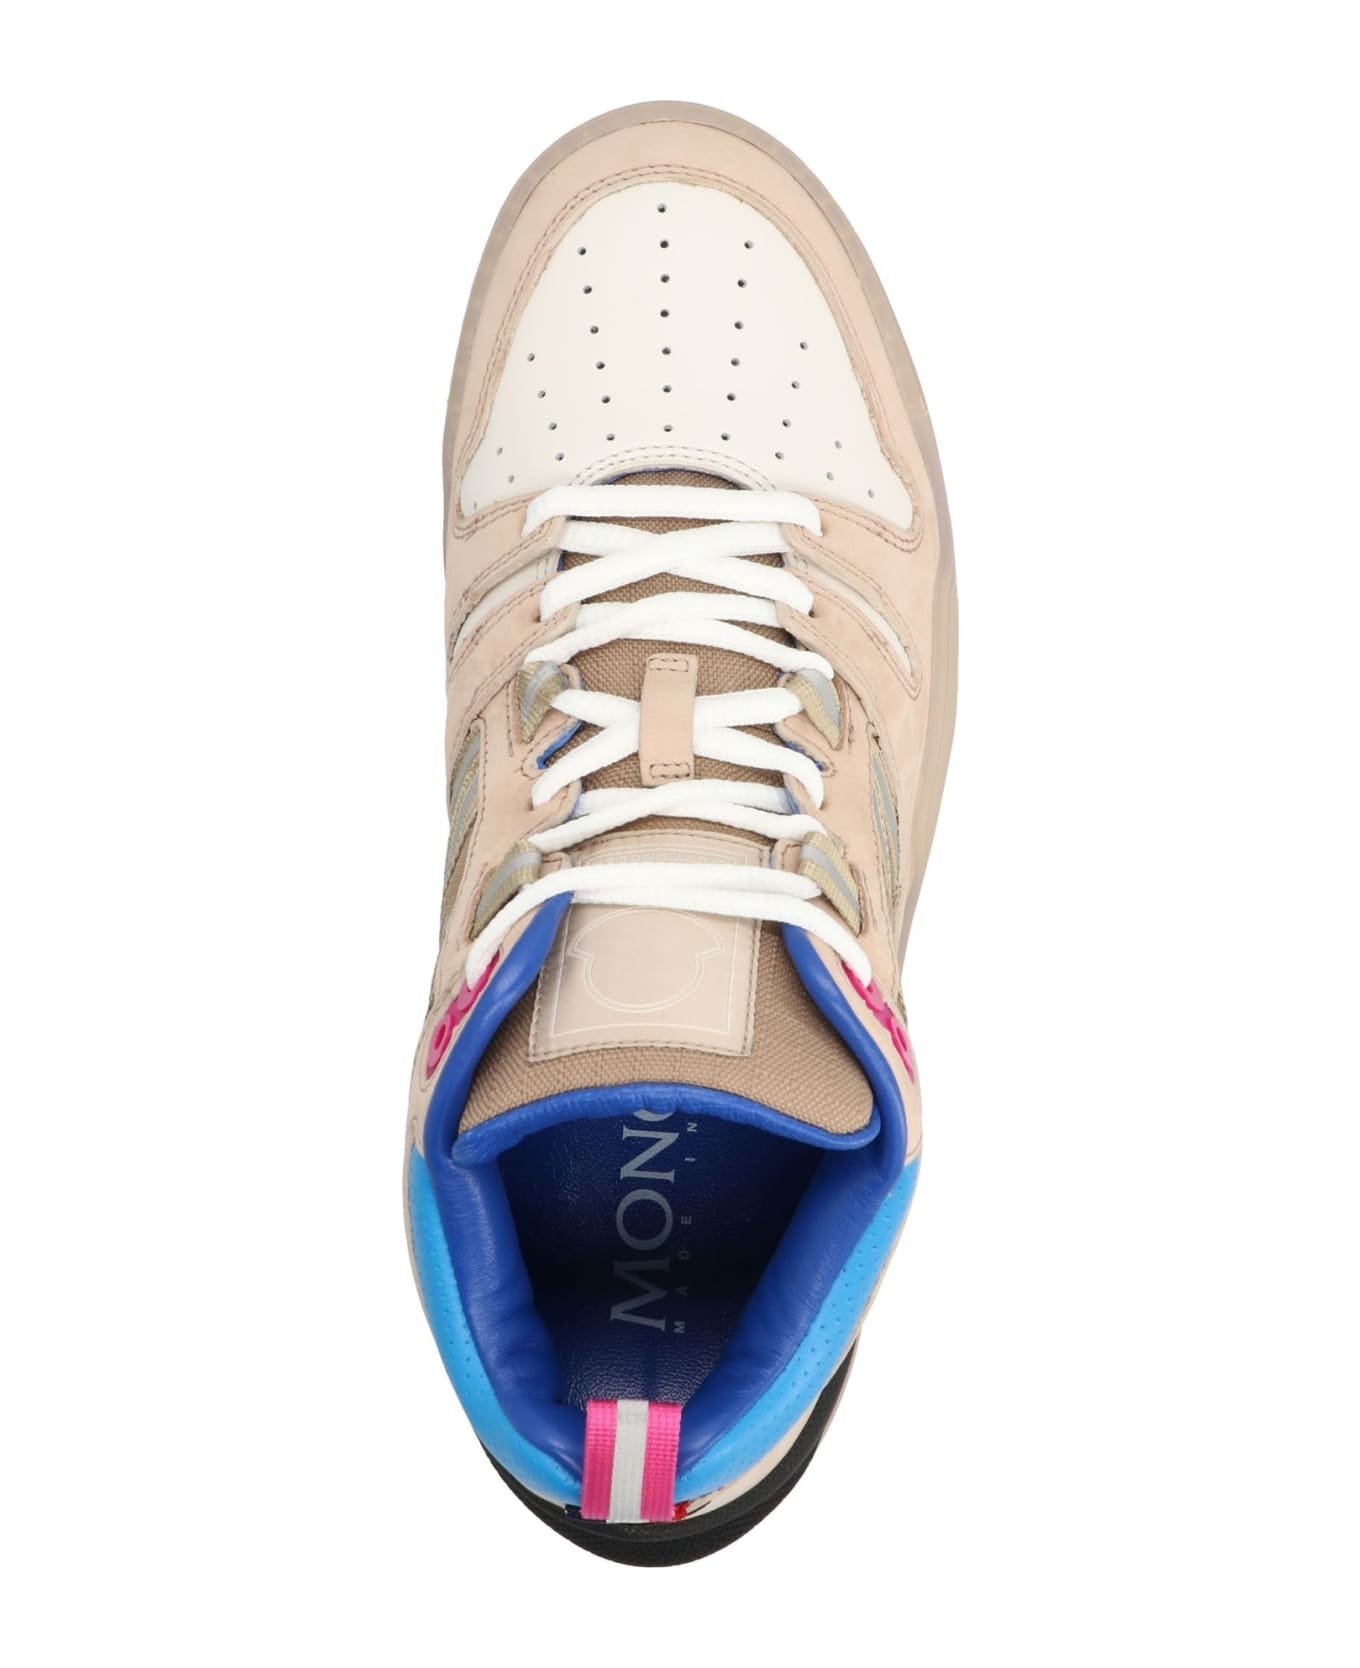 Moncler Multi Color Pivot Sneakers - Beige